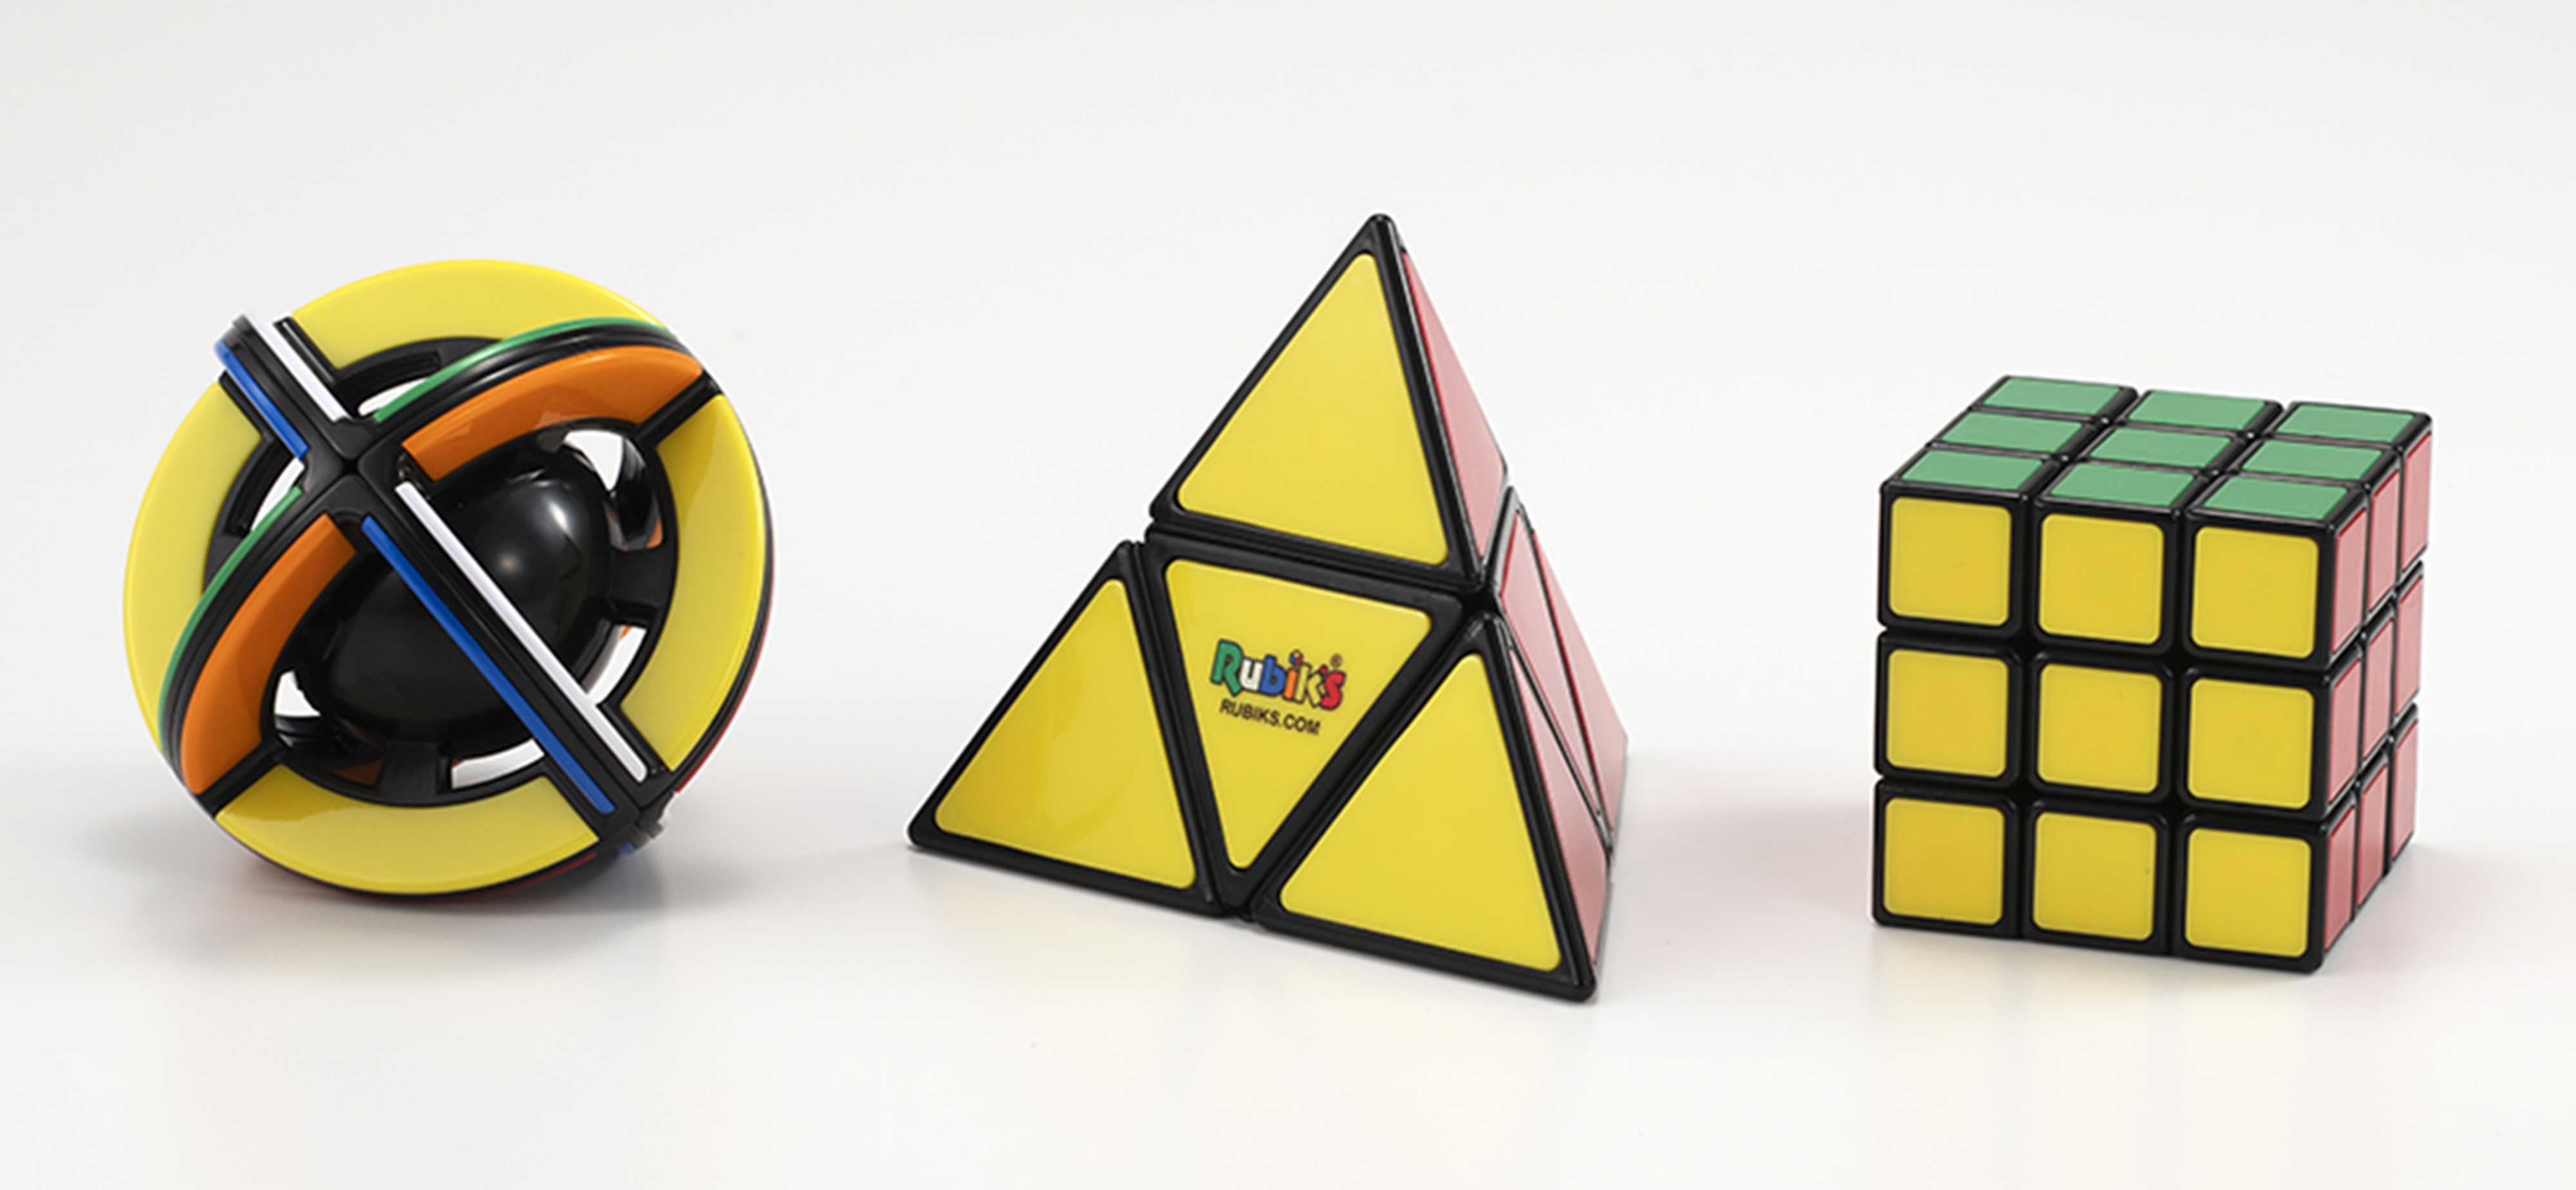 丸と三角のルービックキューブ登場 ルービックサークル ルービックピラミッド メガハウスのプレスリリース